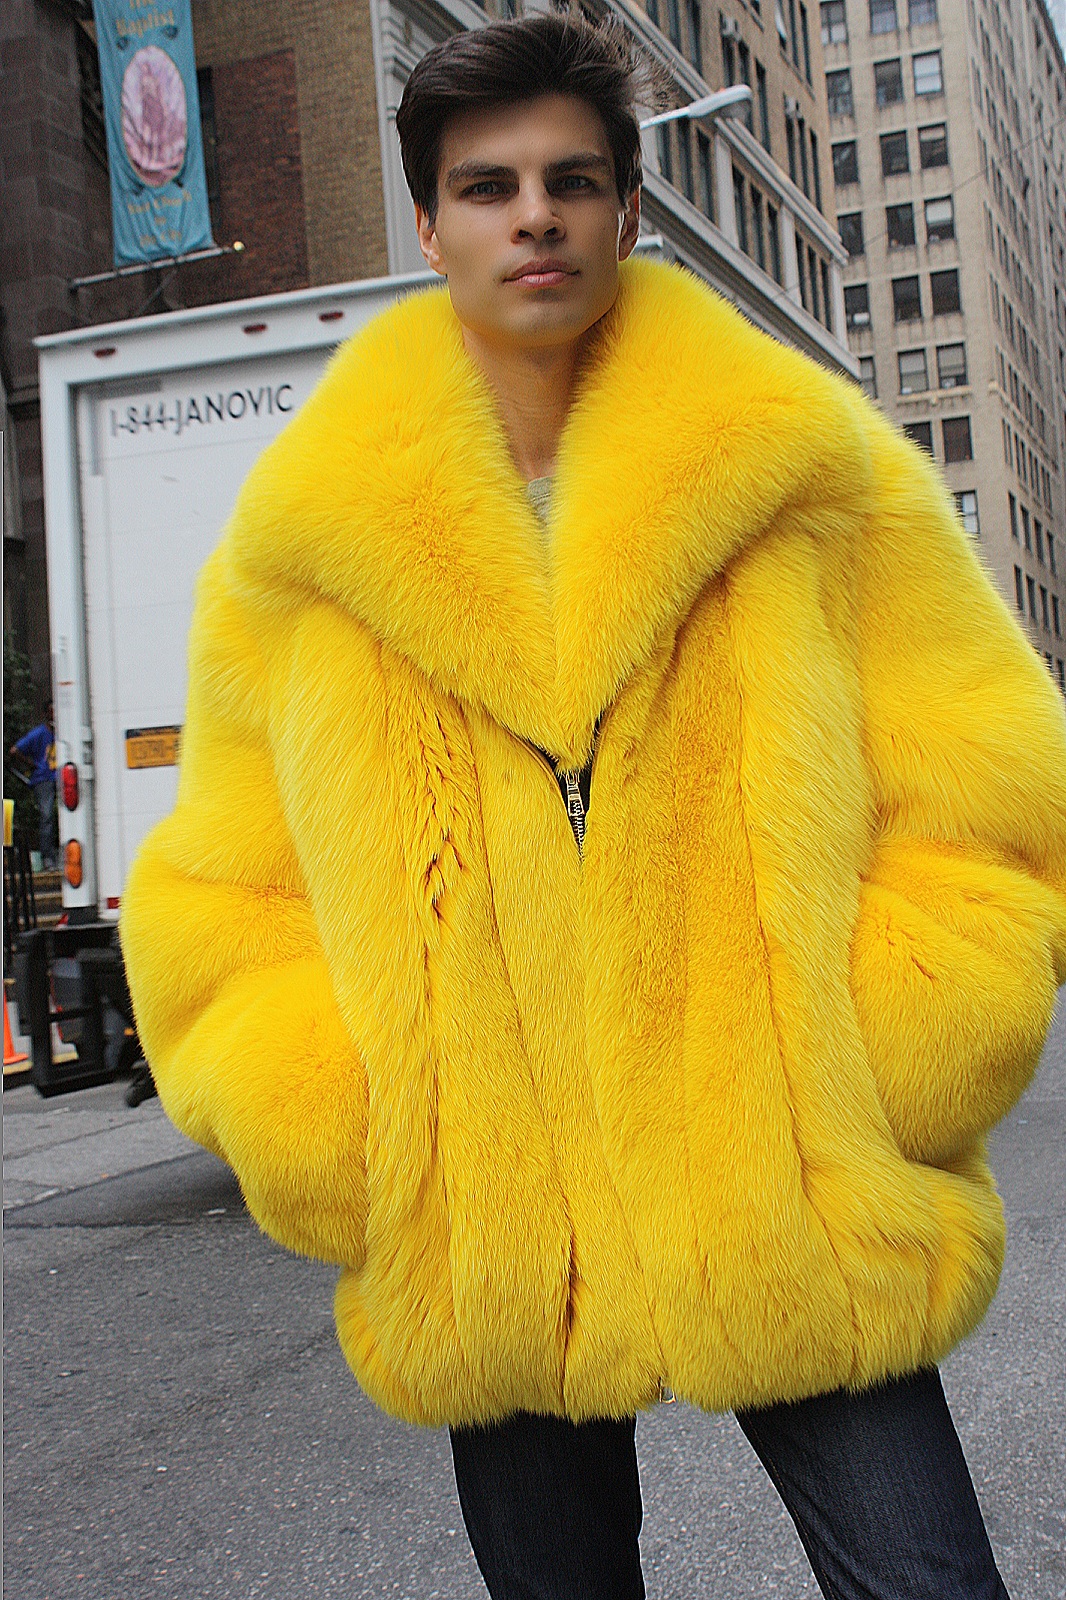 men's fur coats